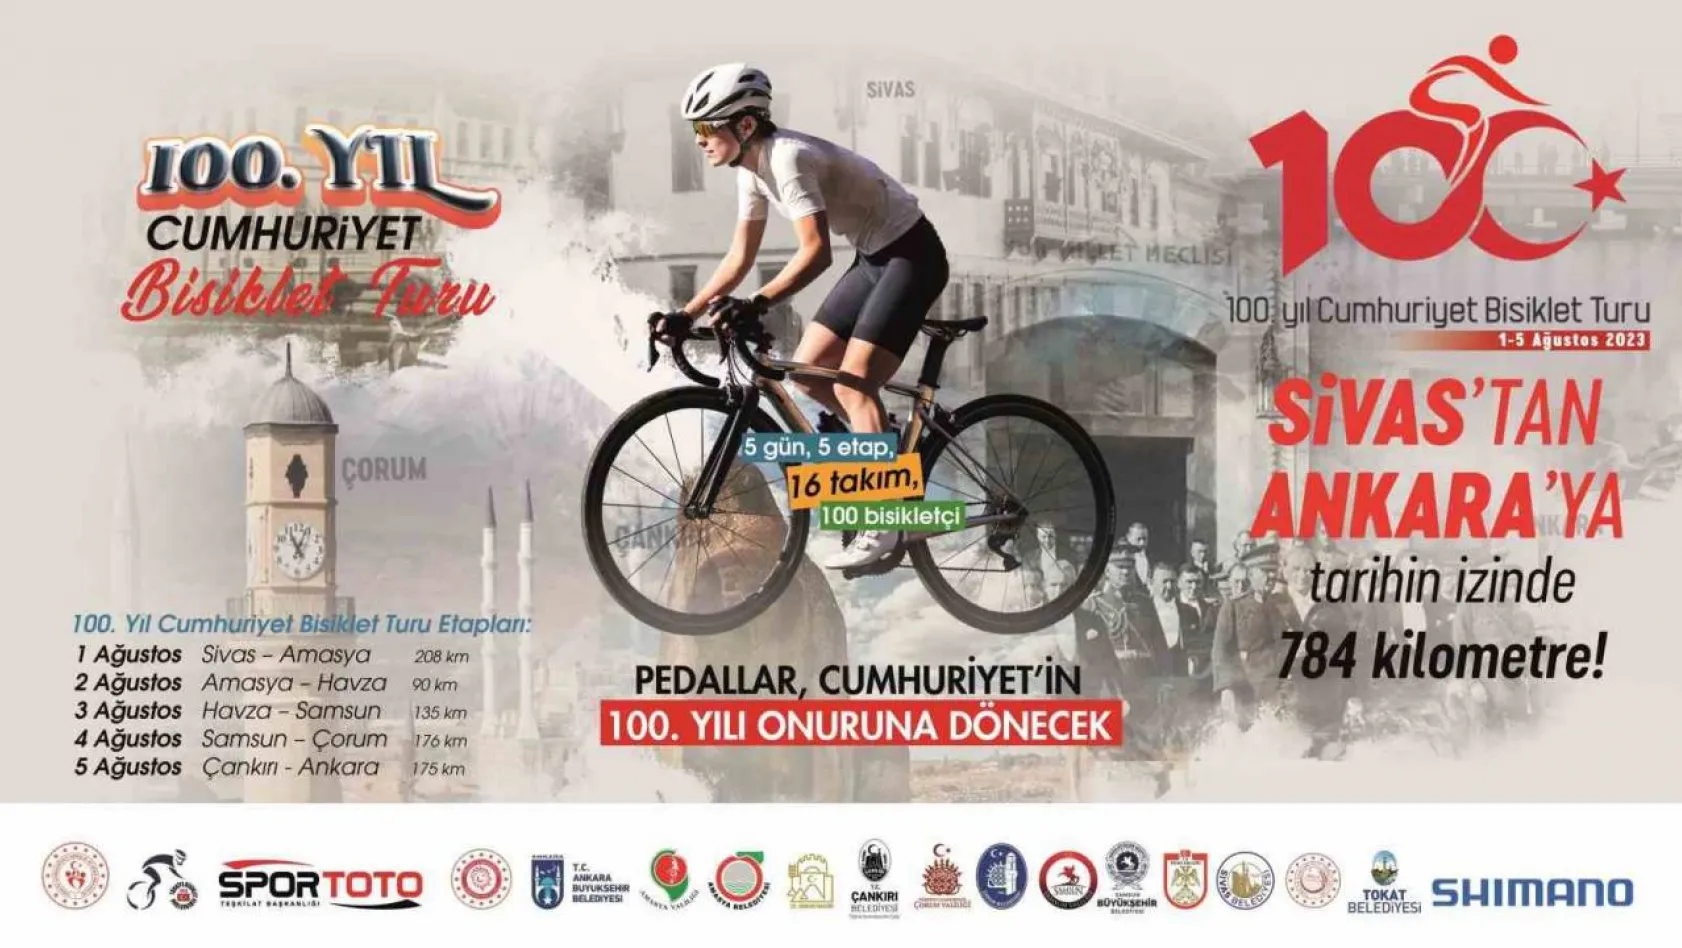 100.Yıl Cumhuriyet Bisiklet Turu'nun 2. etabında bisikletçiler, Amasya'dan Havza'ya pedal çevirecek